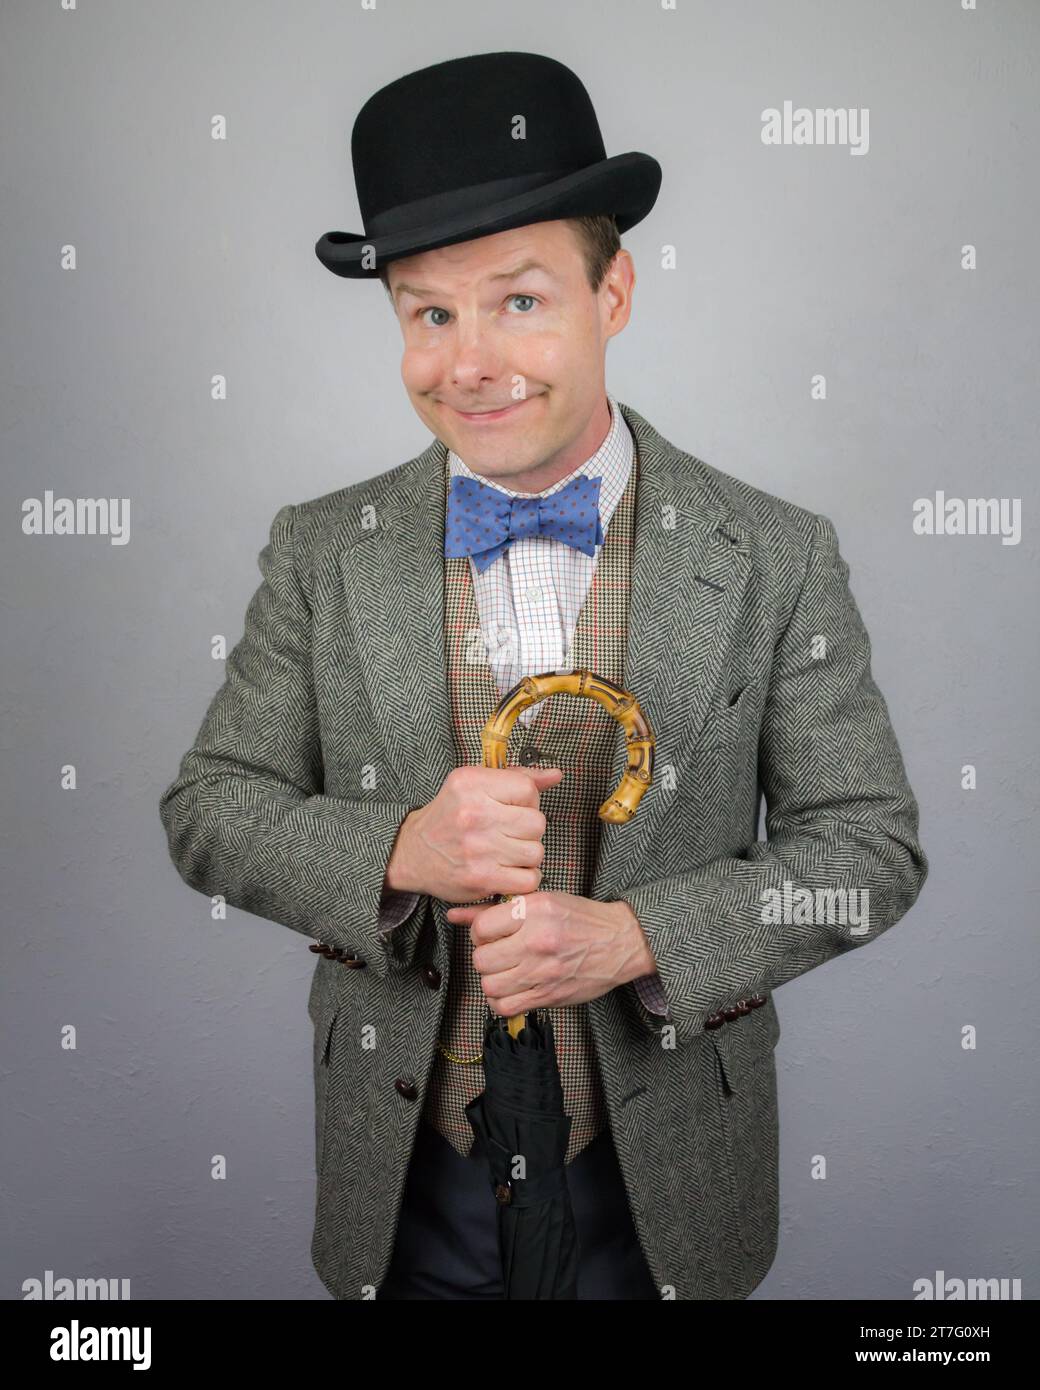 Britischer Charakter im Tweed-Anzug und Bowler-Hut, der einen Regenschirm hält und lächelnd ist. Konzept des Vintage Vaudeville Comic Schauspielers Stockfoto